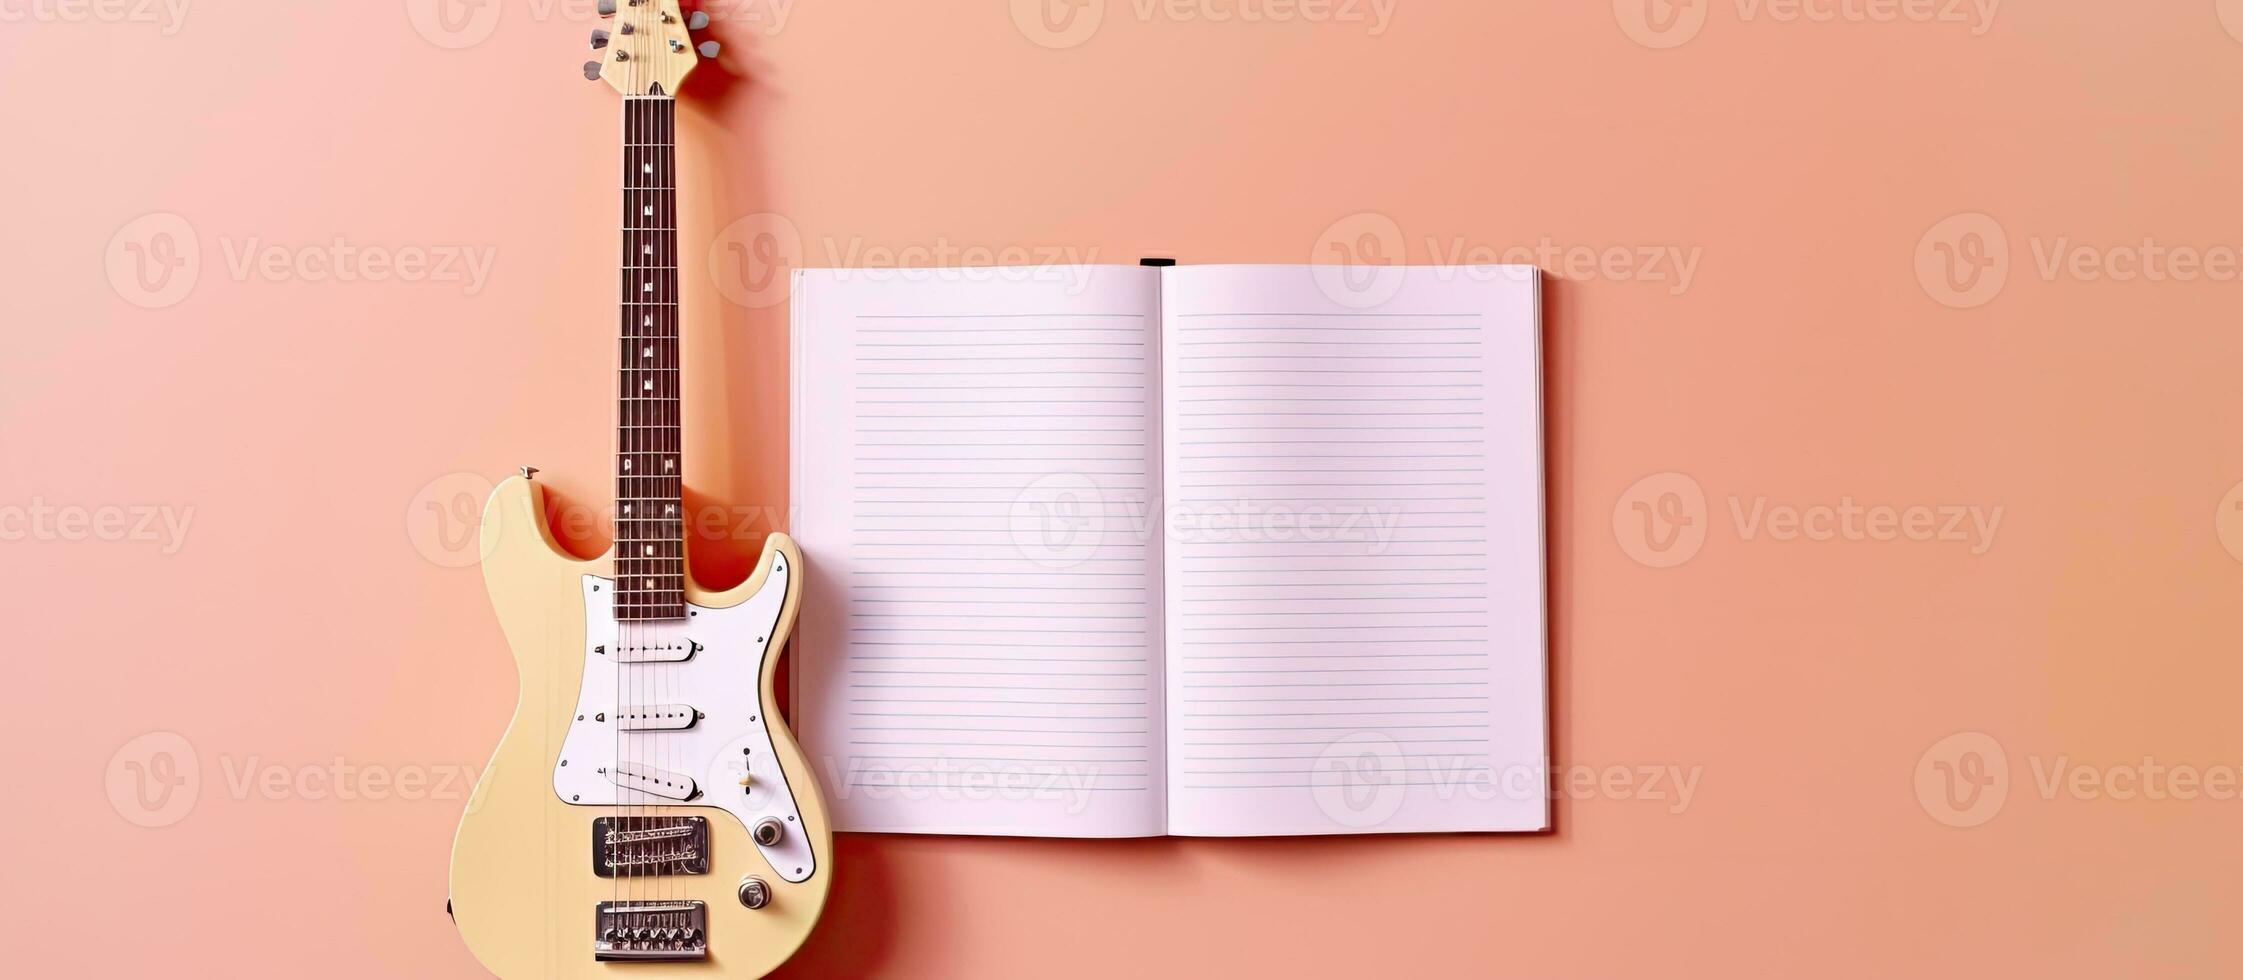 foto do uma guitarra e uma caderno em uma vibrante Rosa fundo com bastante do cópia de espaço com cópia de espaço